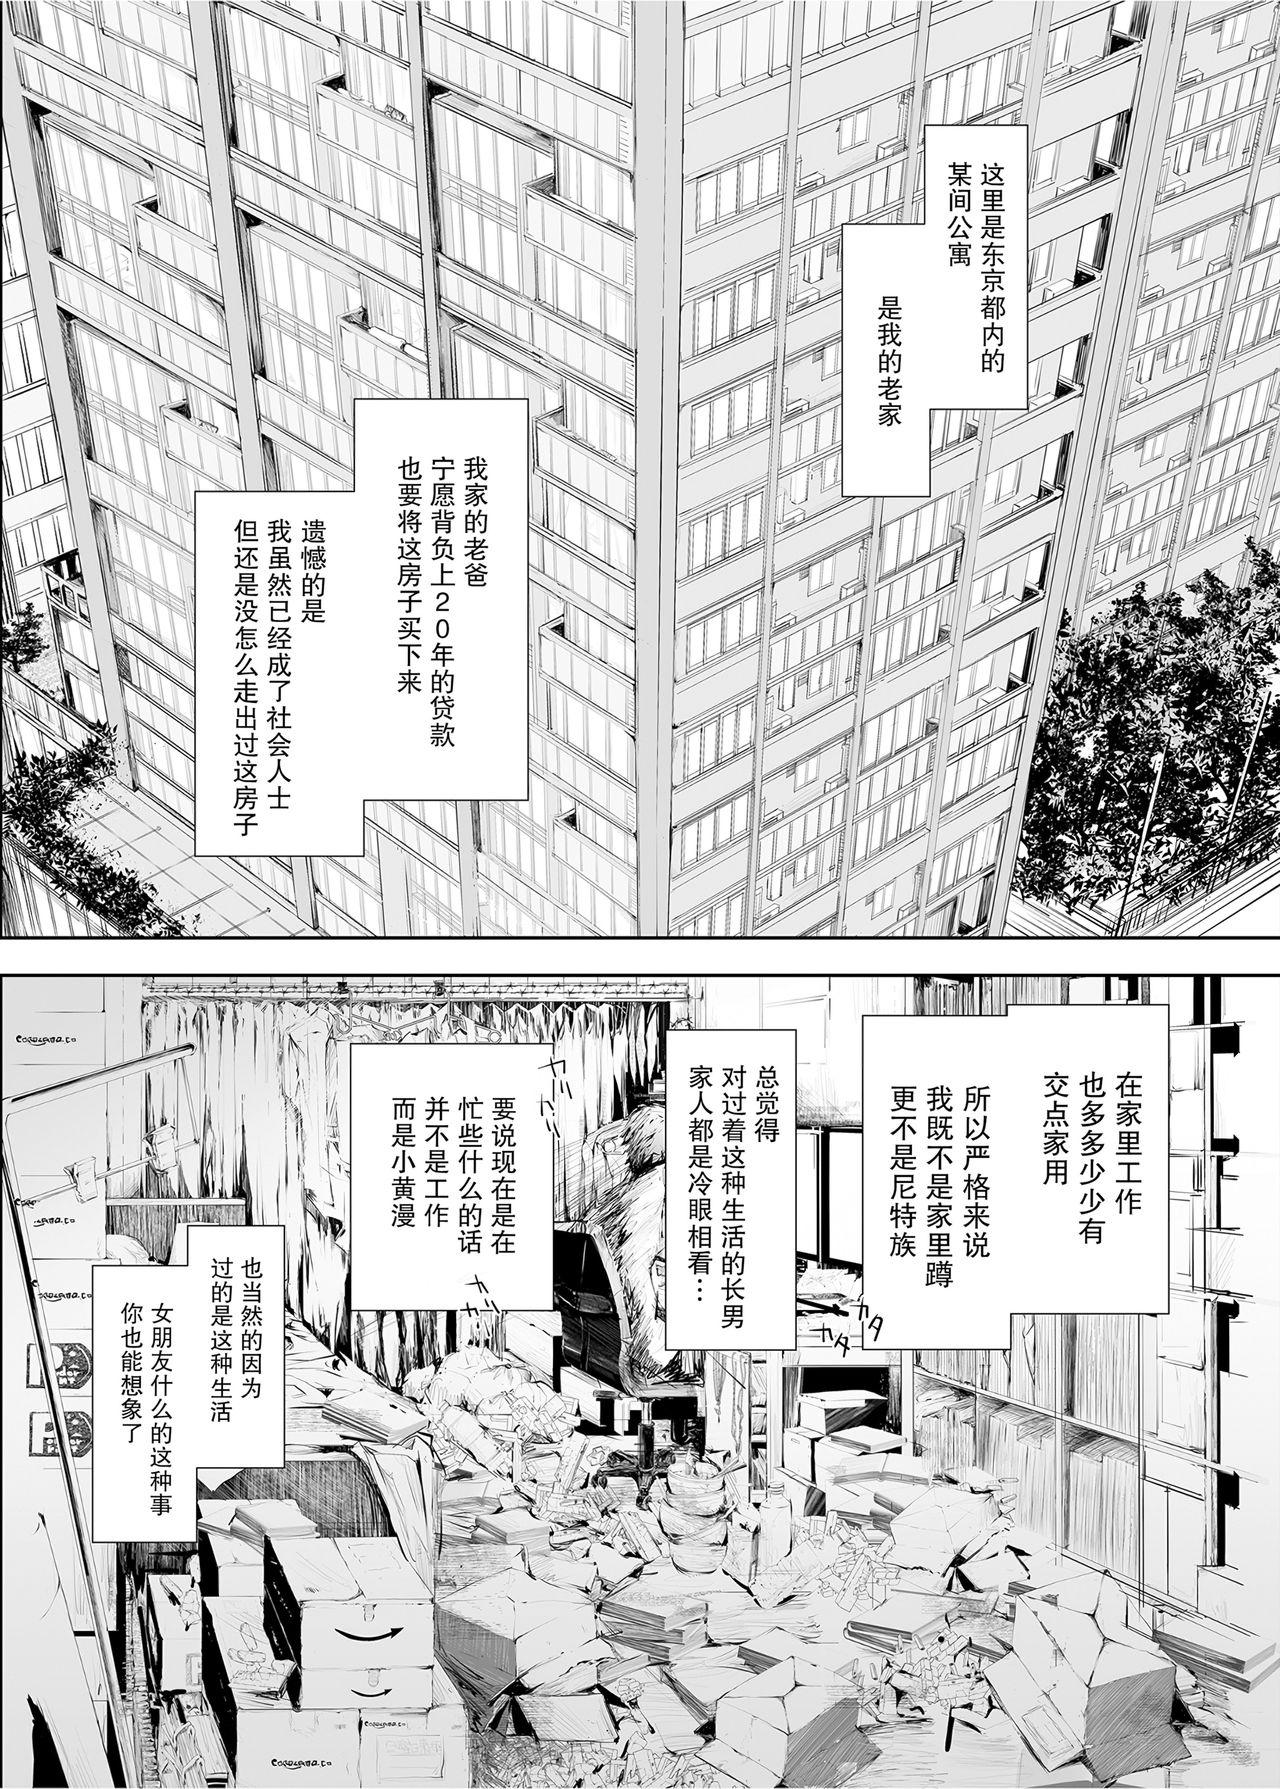 Chacal FUROHILE Jitaku no Furo ni Hairu to Saki ni Shiranai Hadaka no Onna ga Haitteru - Original Gay Pissing - Page 7